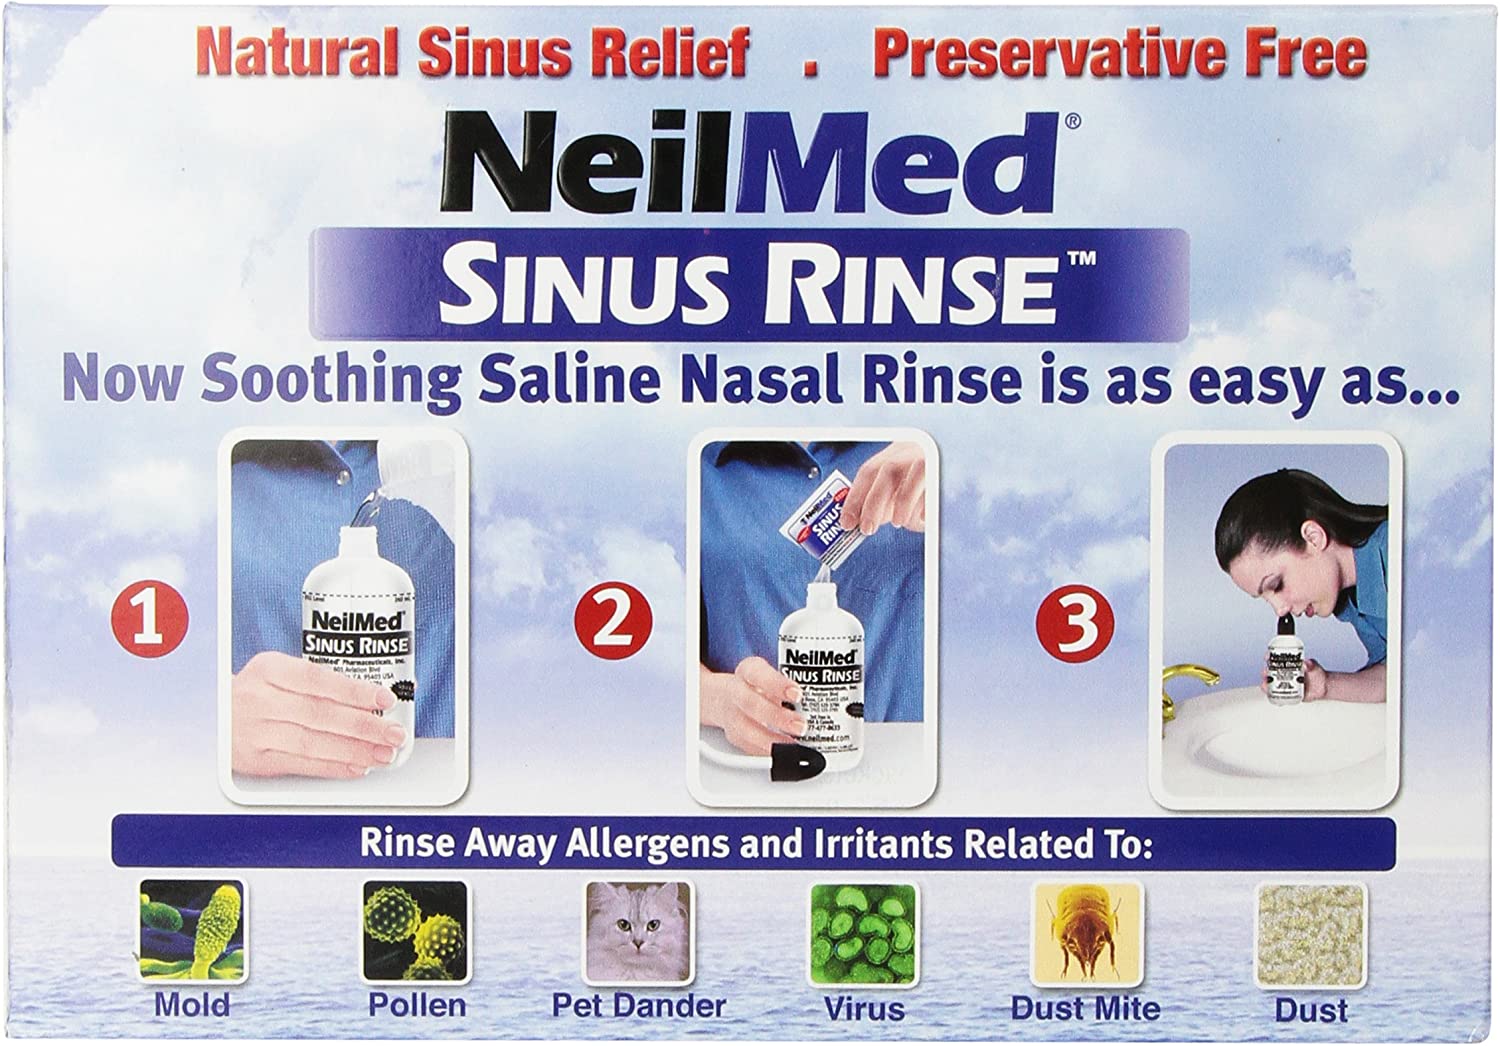 Sinus Rinse by NeilMed